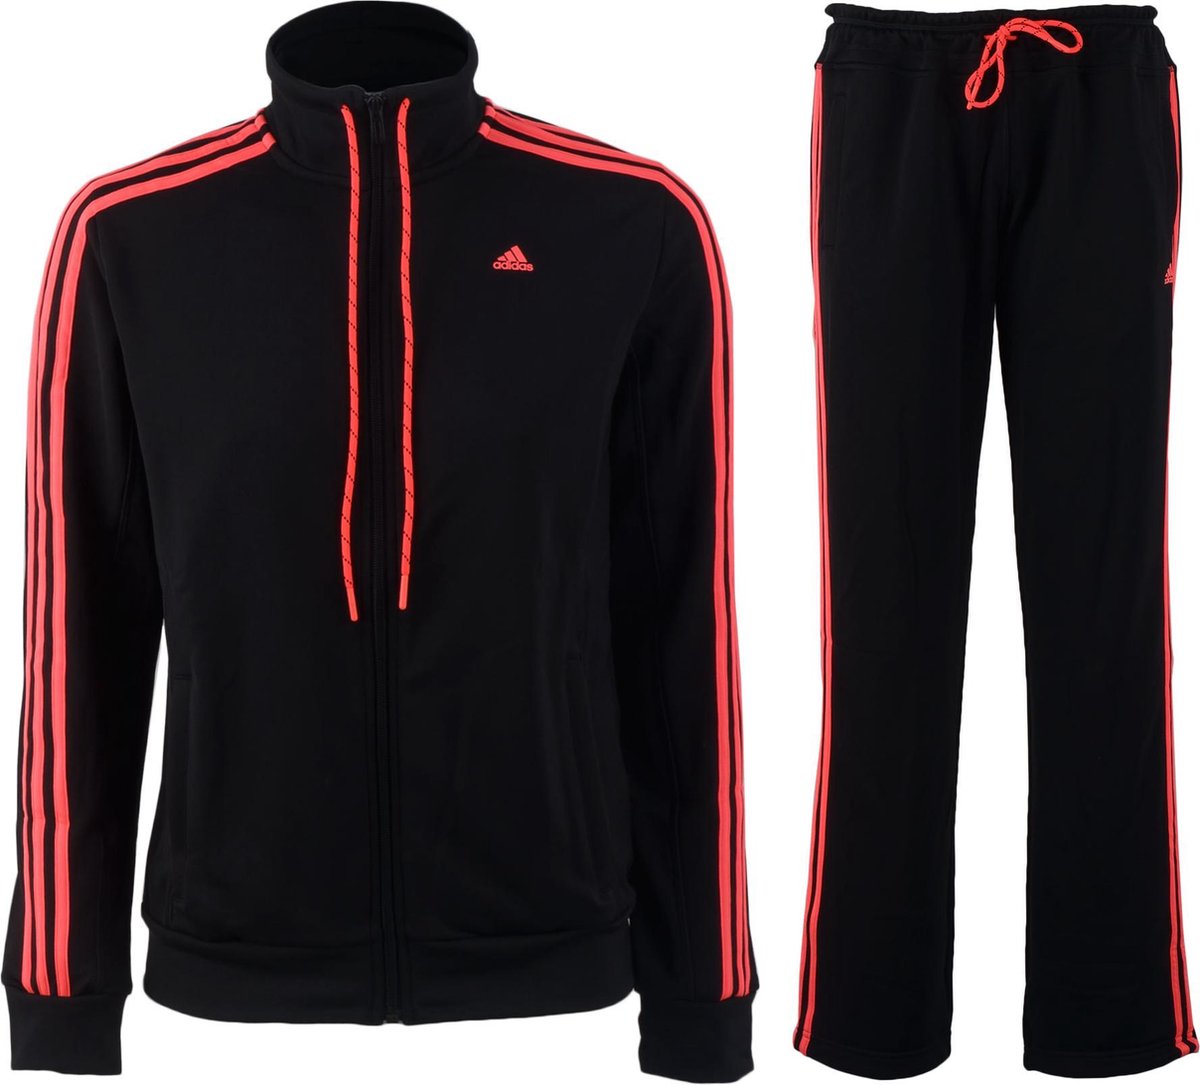 opslaan dood Zeker adidas Essential 3Stripe Suit - Trainingspak - Vrouwen - Maat L - zwart/roze  | bol.com